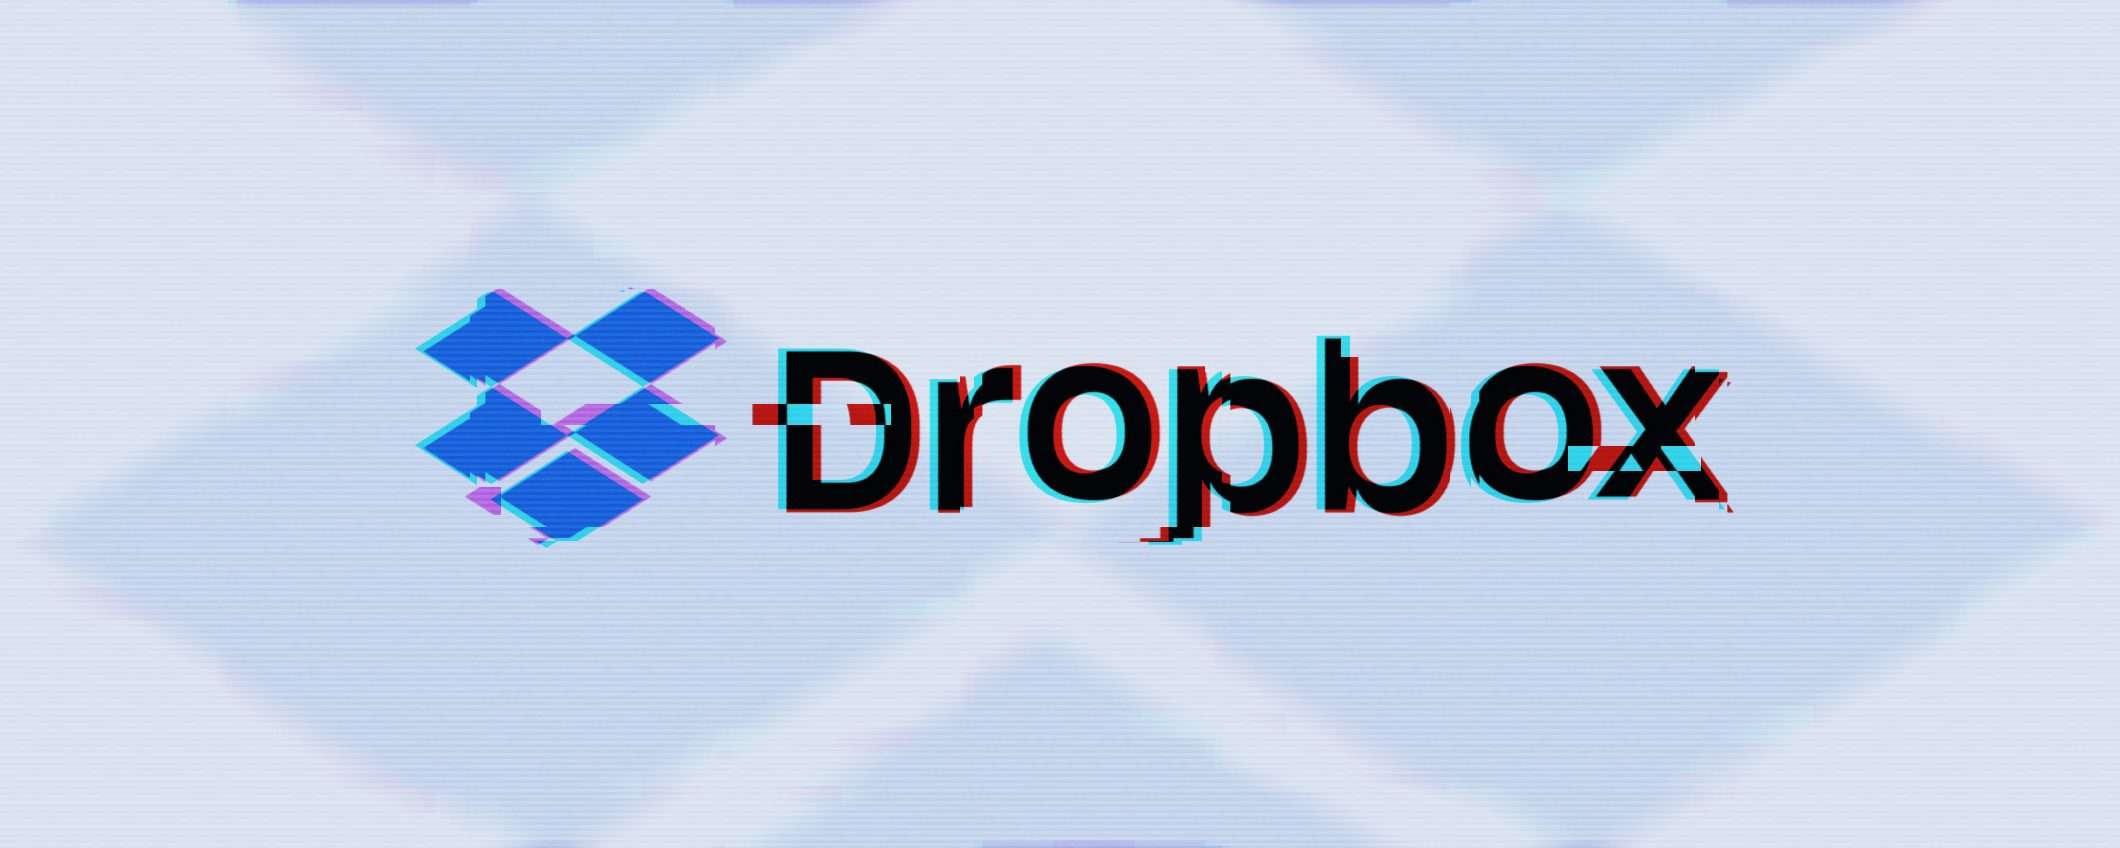 Dropbox, attacco phishing: cosa è successo